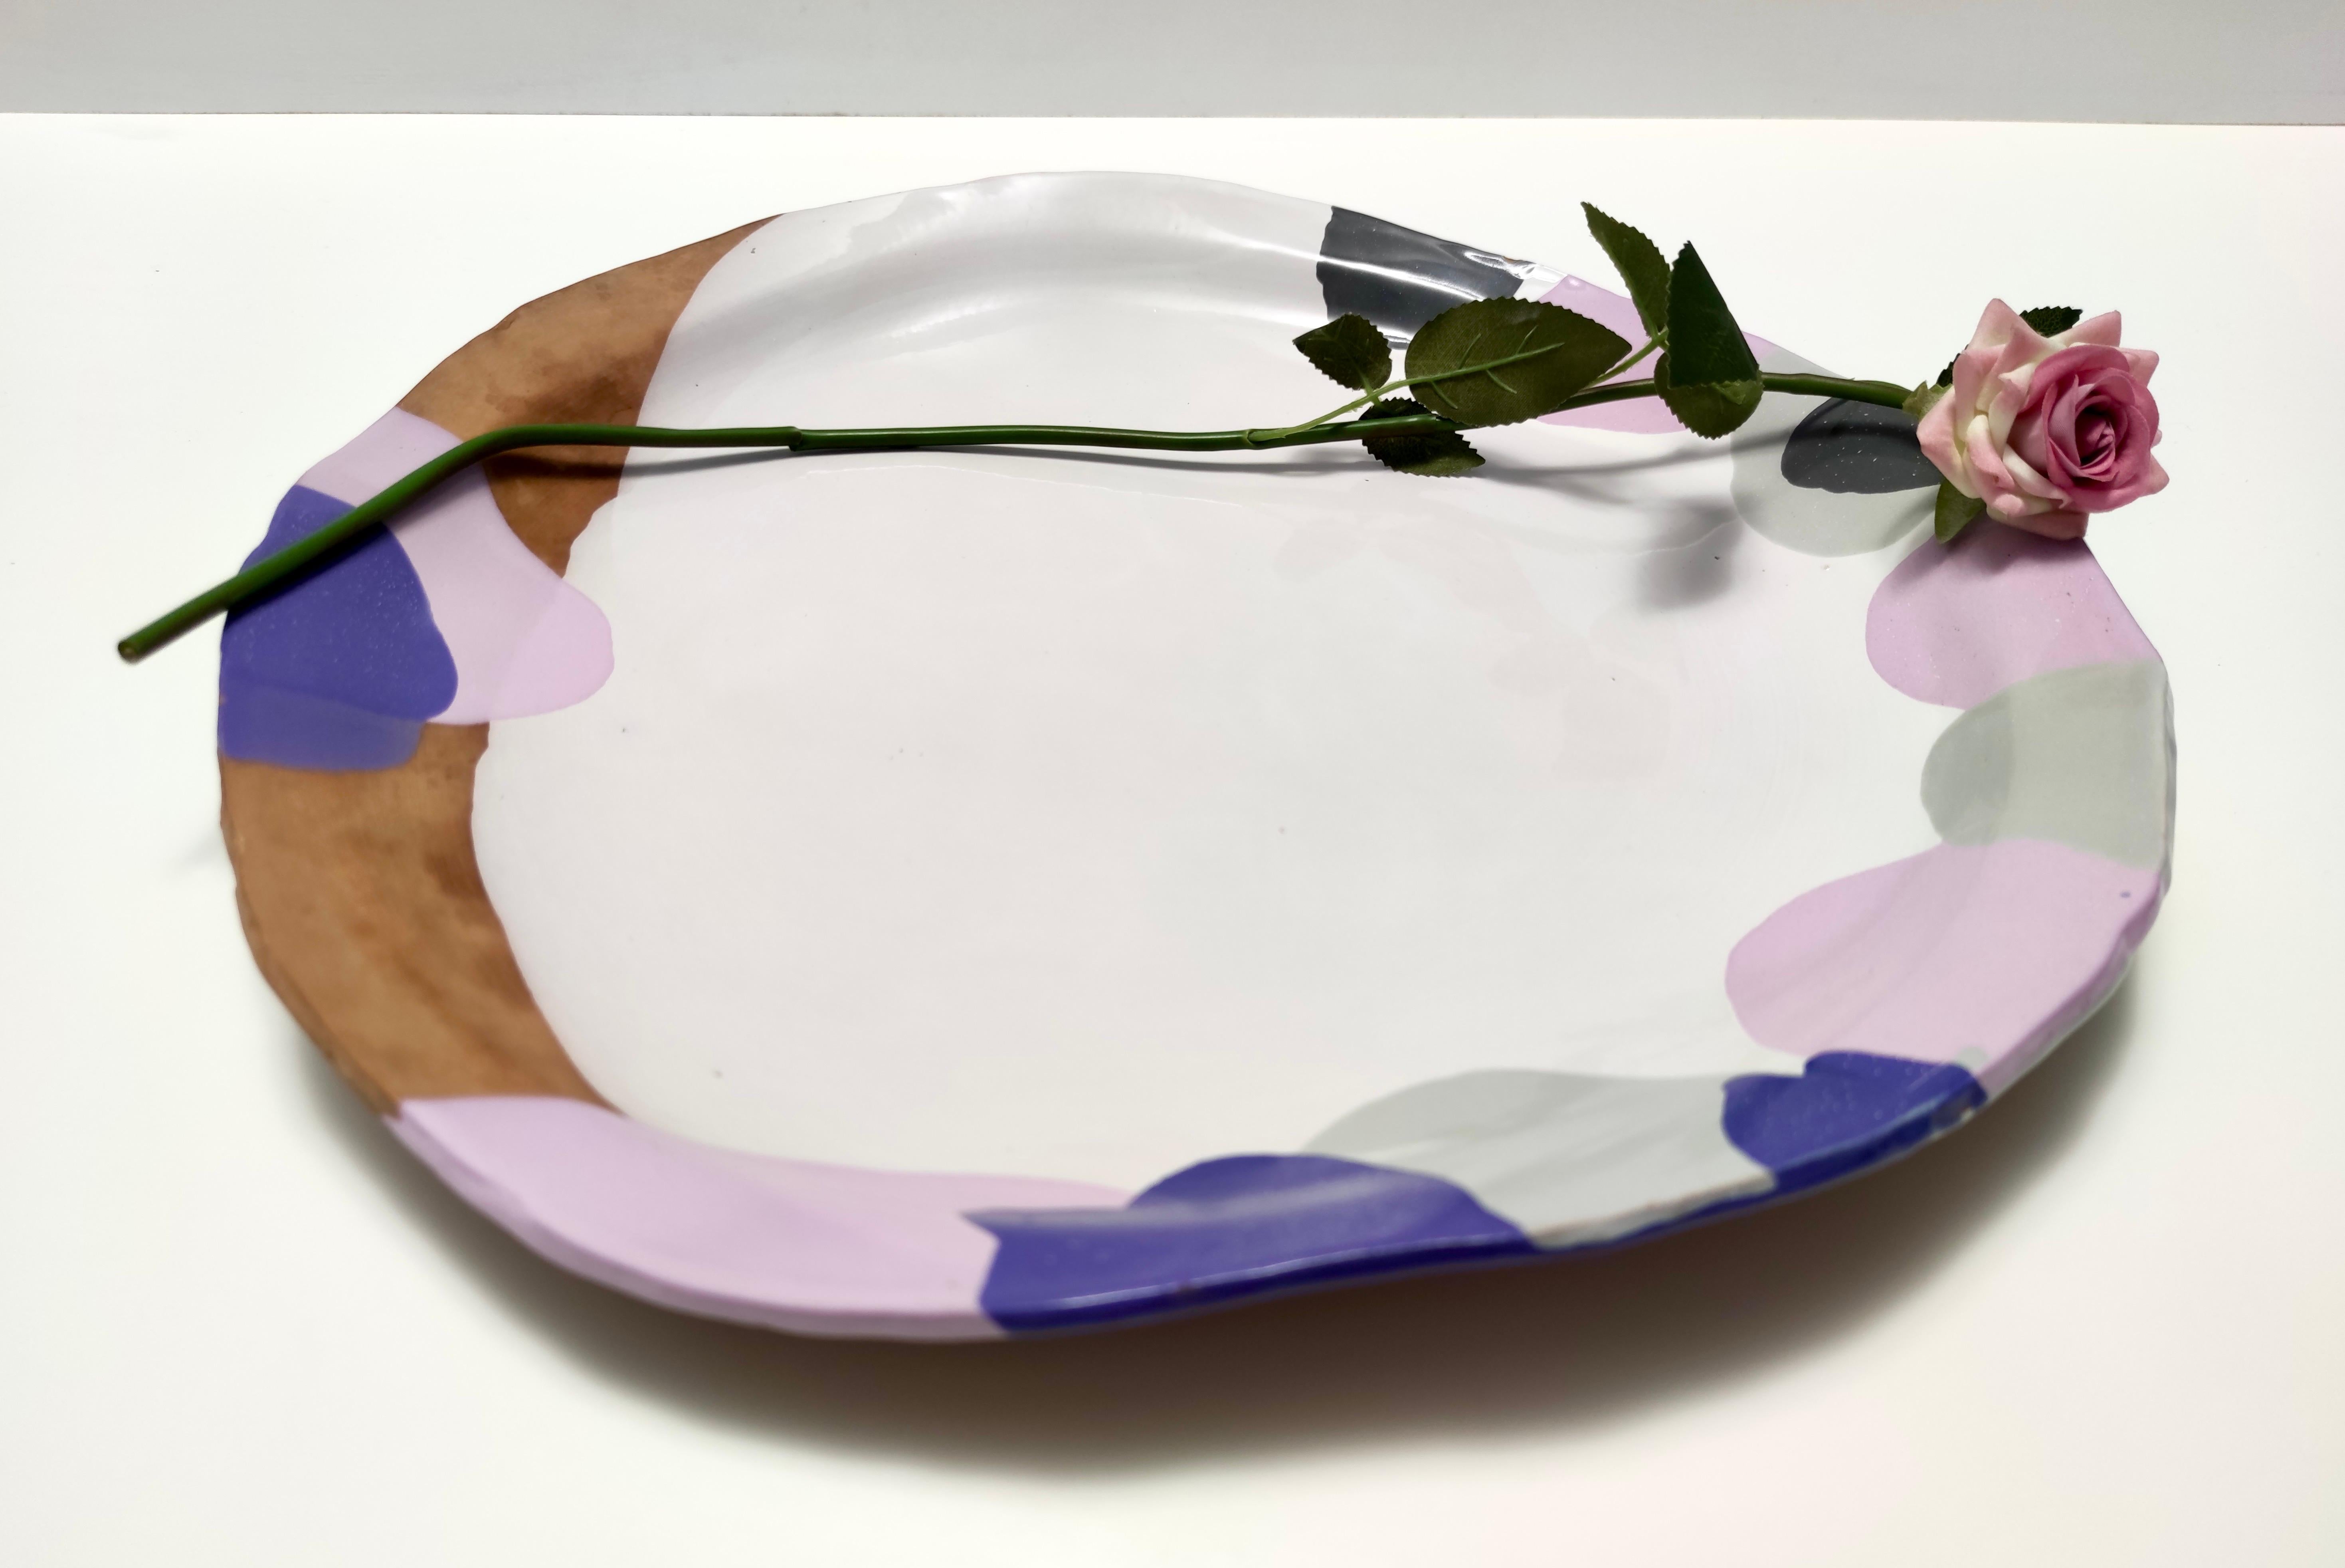 Hergestellt in Italien, 1980er Jahre. 
Dieser dekorative Teller ist aus glasiertem Steingut hergestellt.
Es ist von Pino Castagna unterzeichnet.
Da es sich um ein Vintage-Stück handelt, kann es leichte Gebrauchsspuren aufweisen, aber es ist in einem